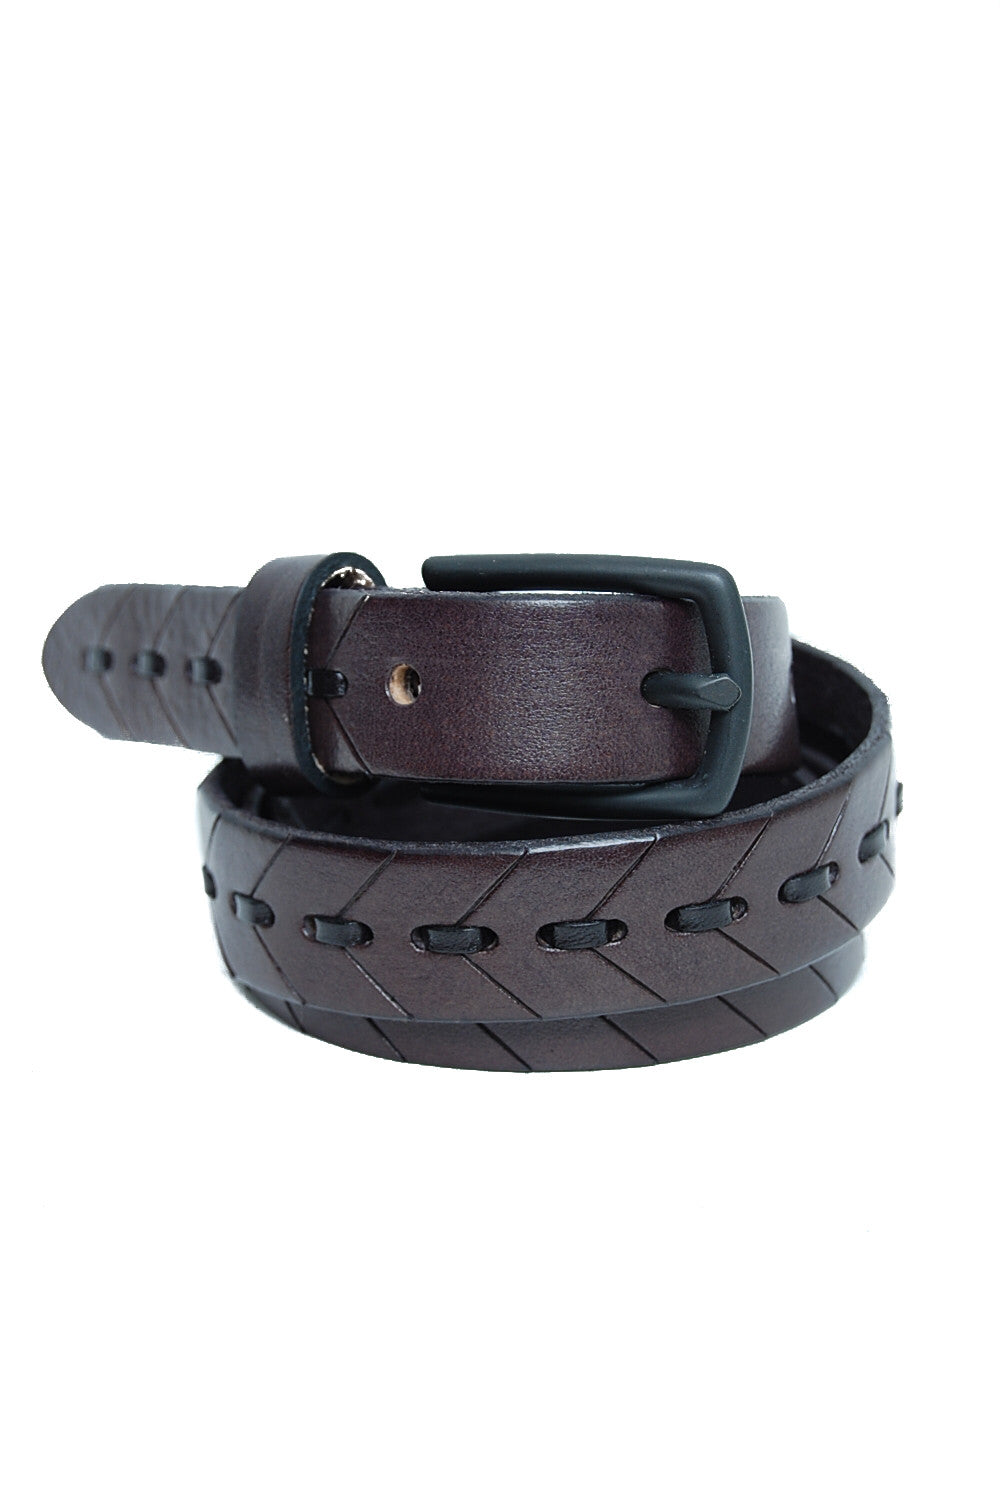 Themata Stitched Belt dark grey